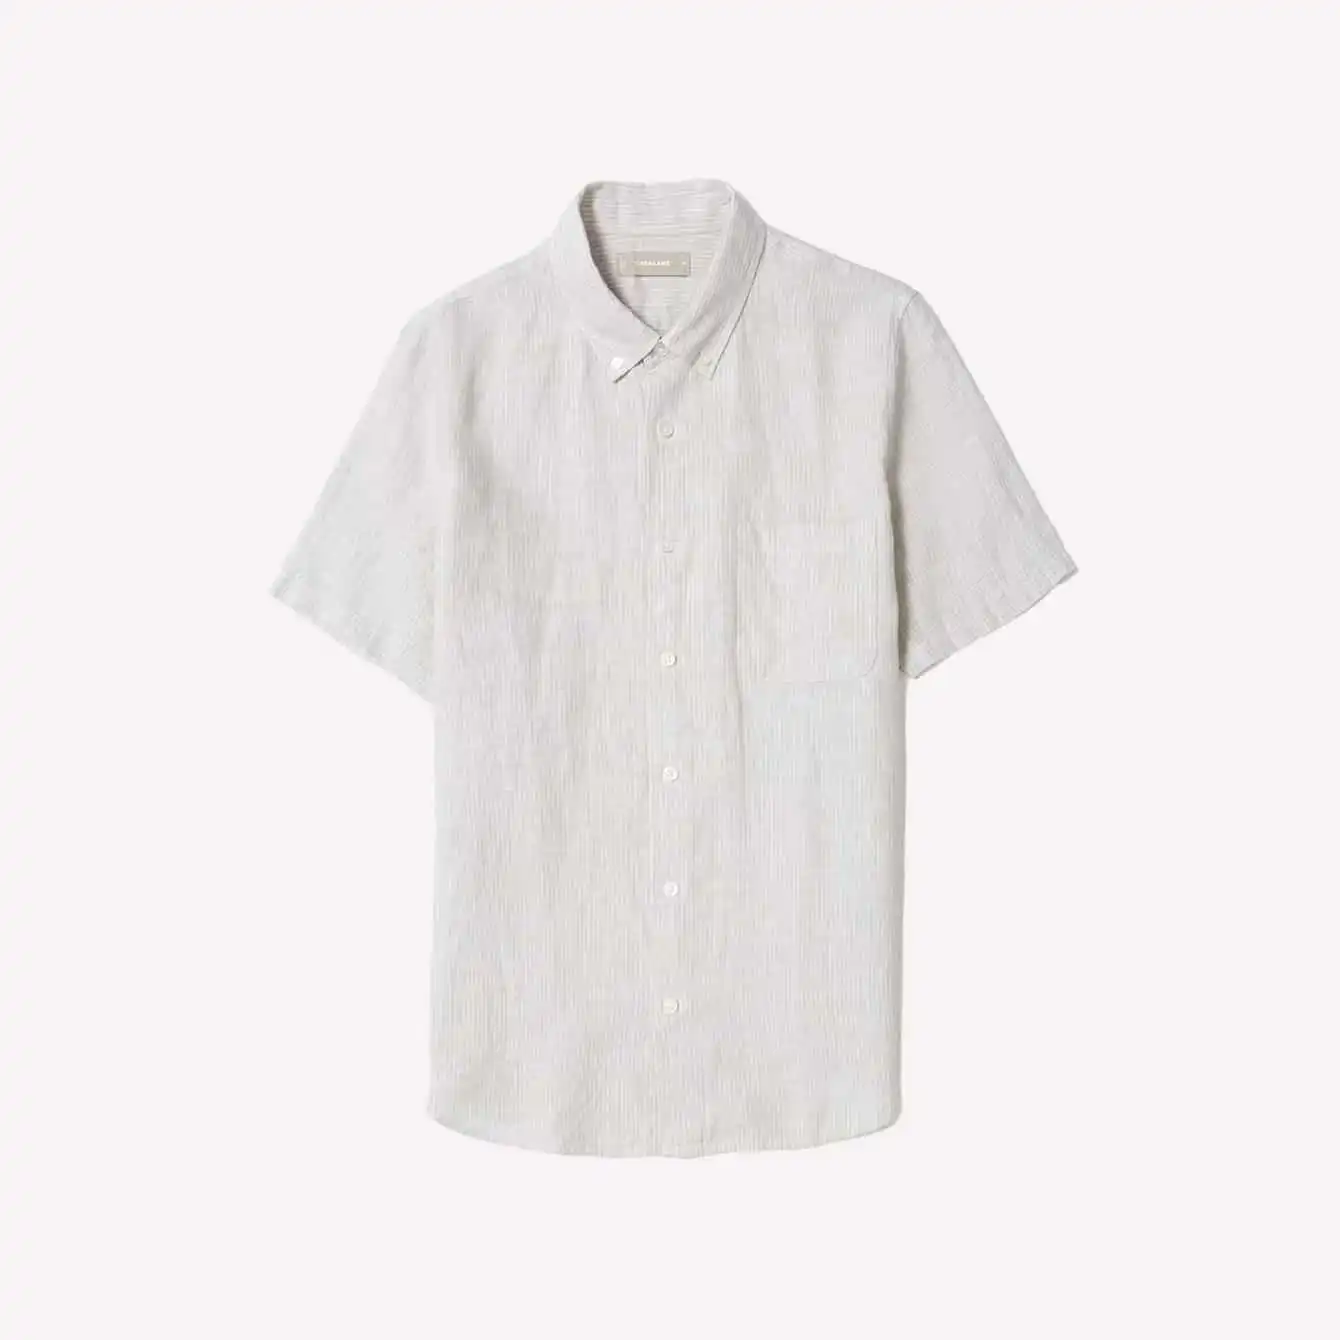 Everlane - Linen Short-Sleeve Standard Fit Shirt